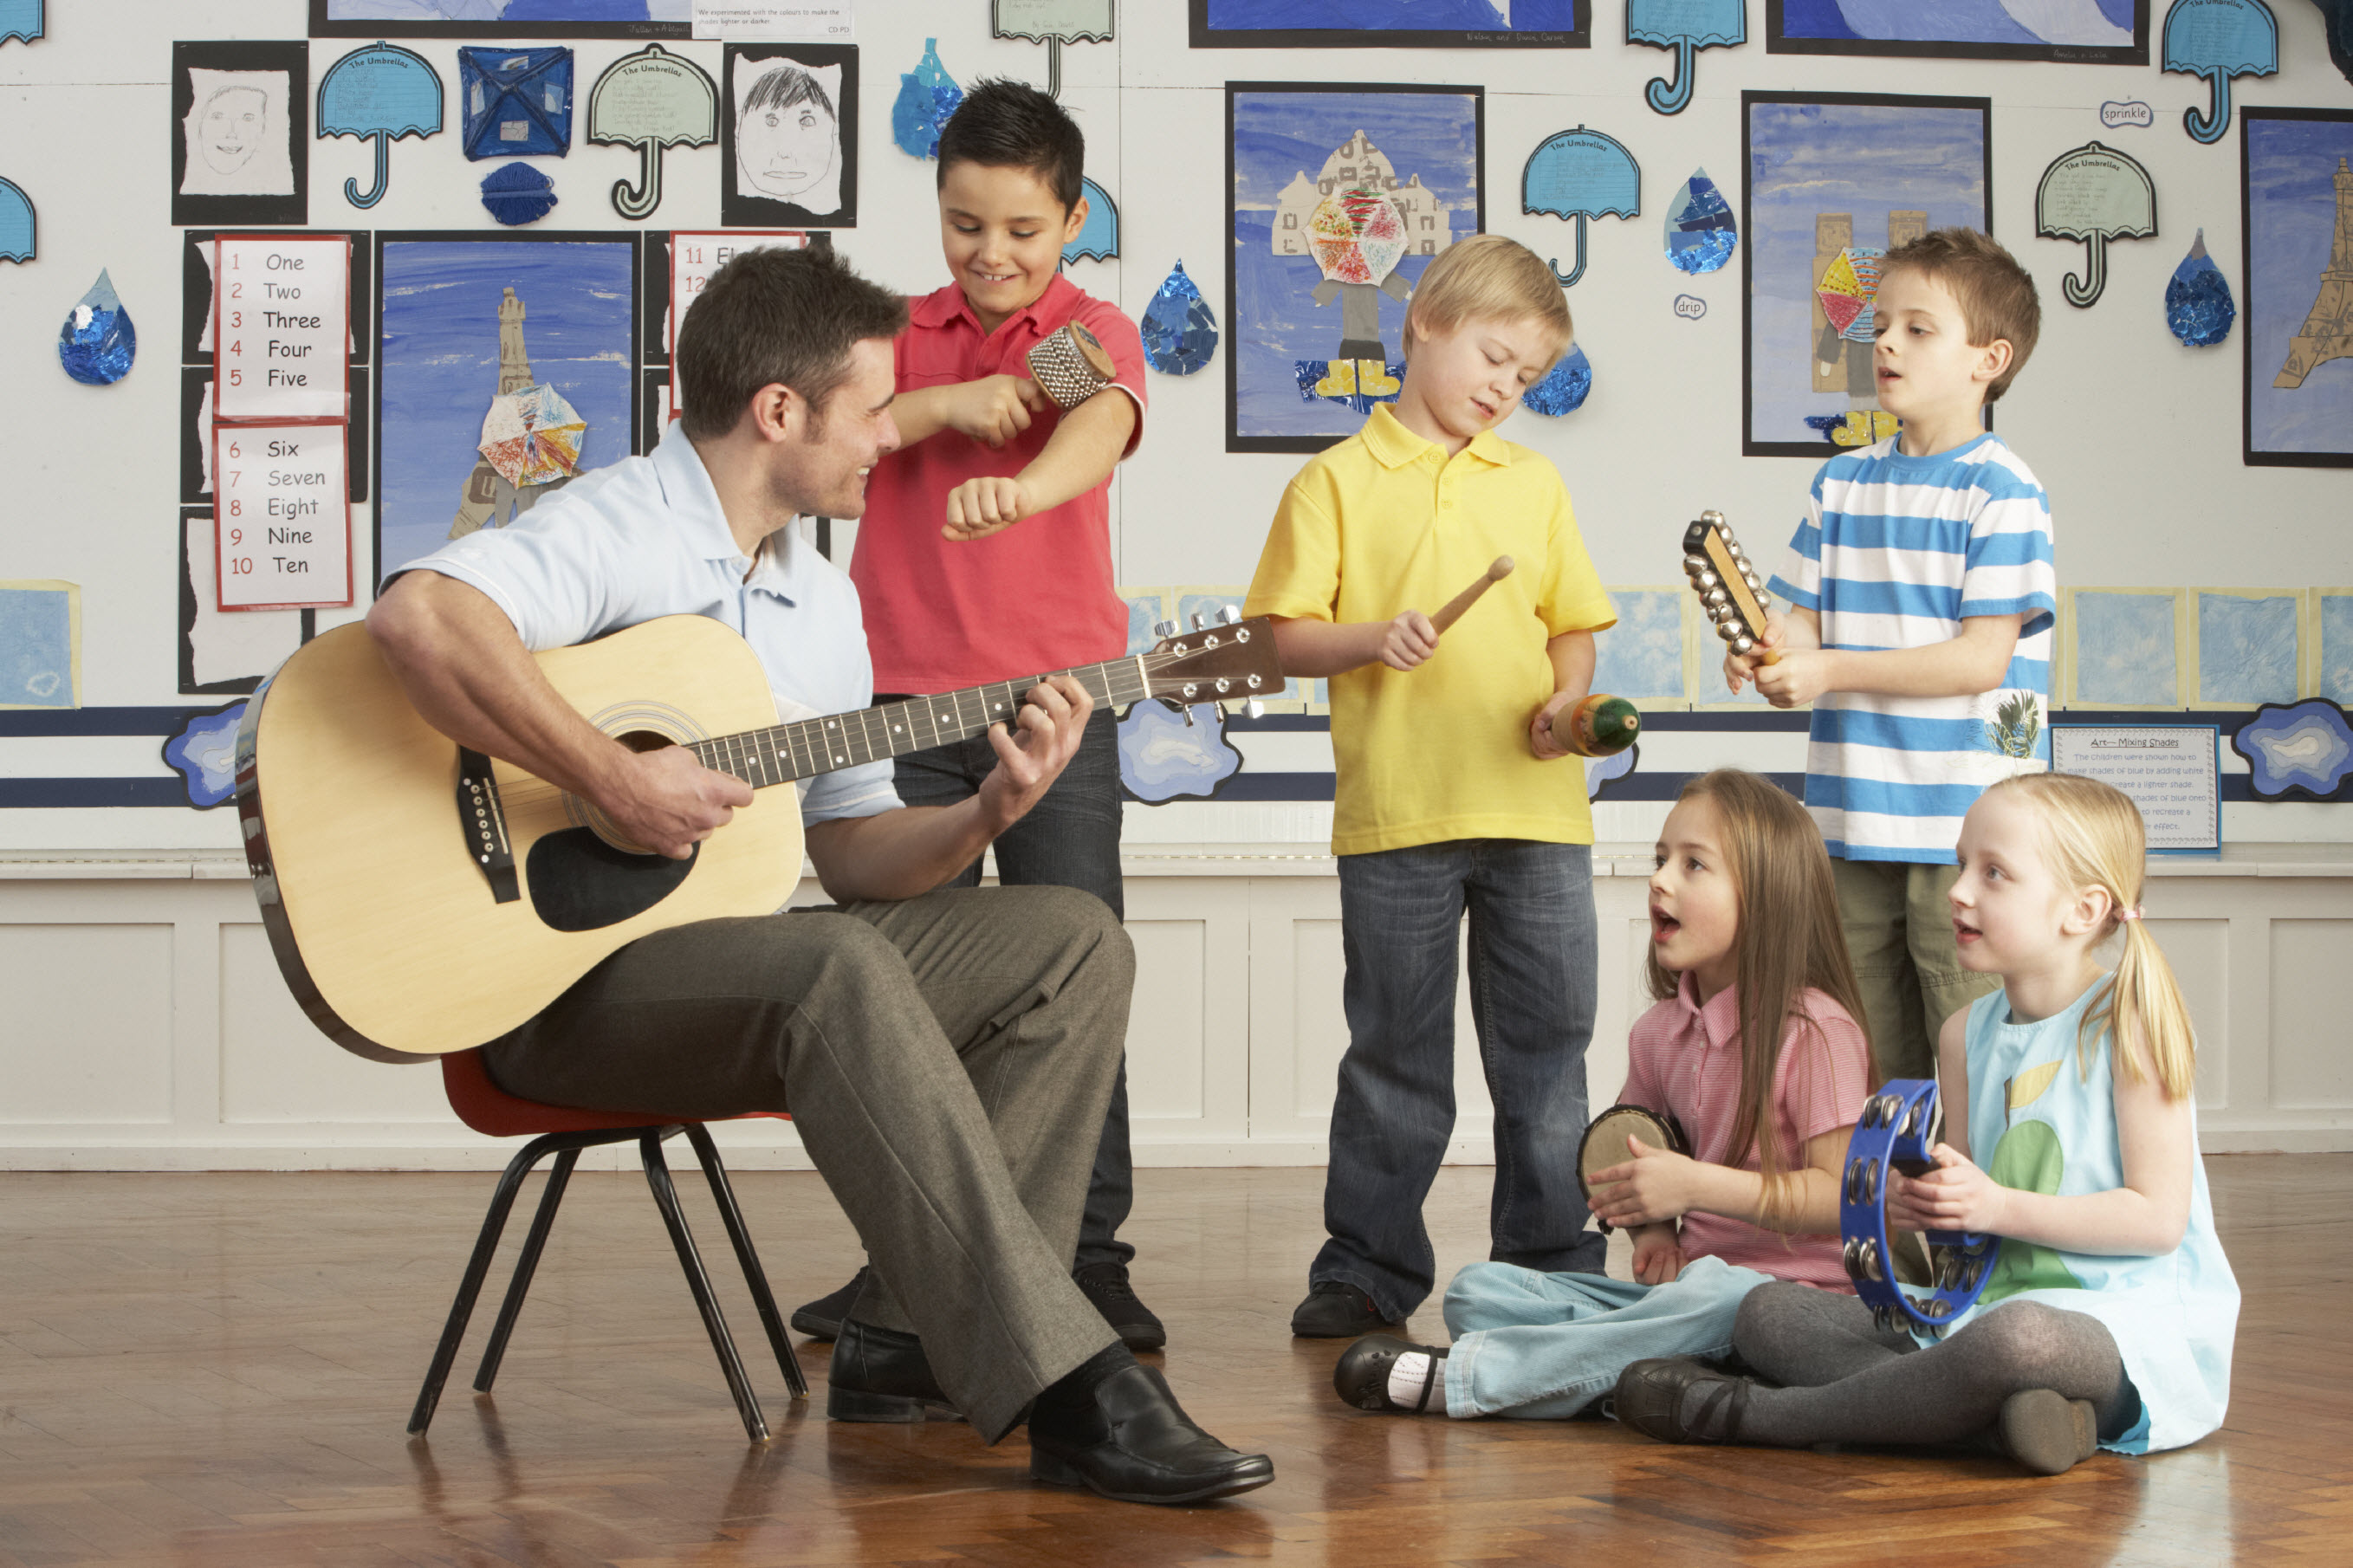 Музыкальный урок для детей. Музыкальное занятие в детском саду. Дети на музыкальном занятии. Музыкальные инструменты для детей. Дети играющие на музыкальных инструментах.